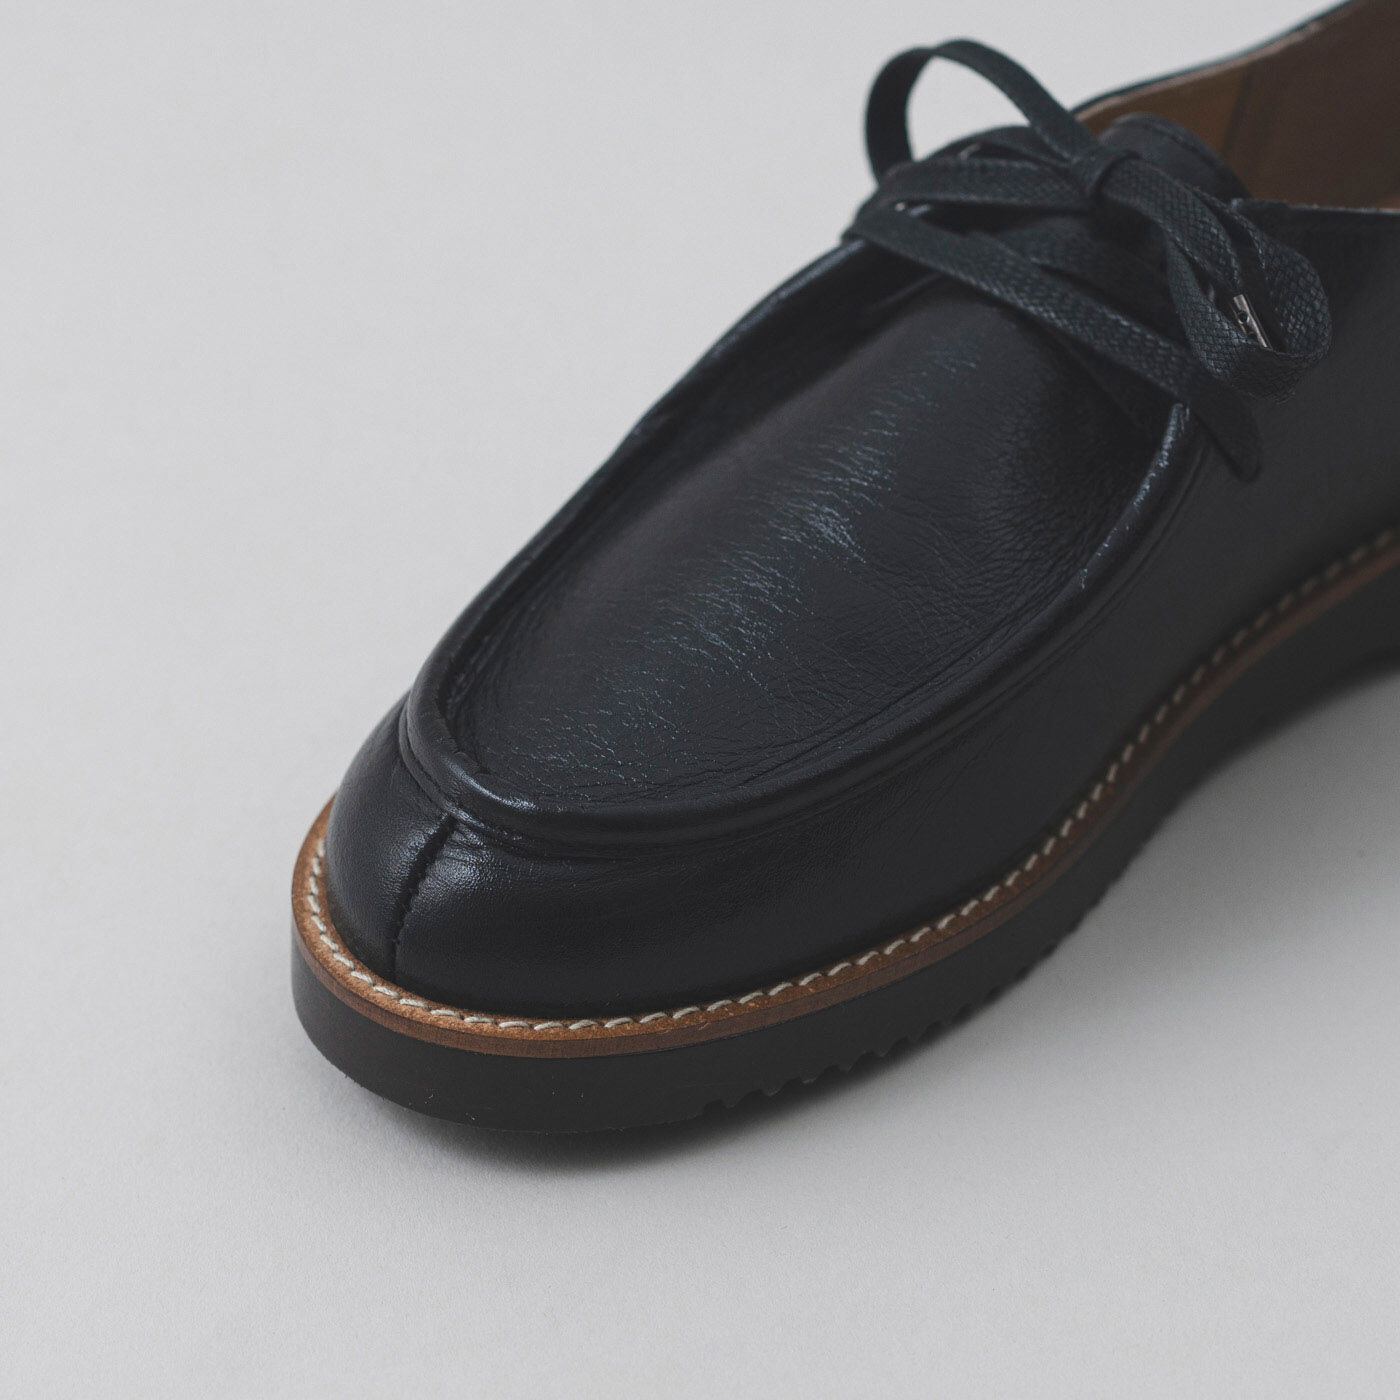 ＆Stories|長田の靴職人が作った 職人本革のモカシンシューズ〈ブラックスピネル〉|白糸のステッチがさりげないアクセントになっています。